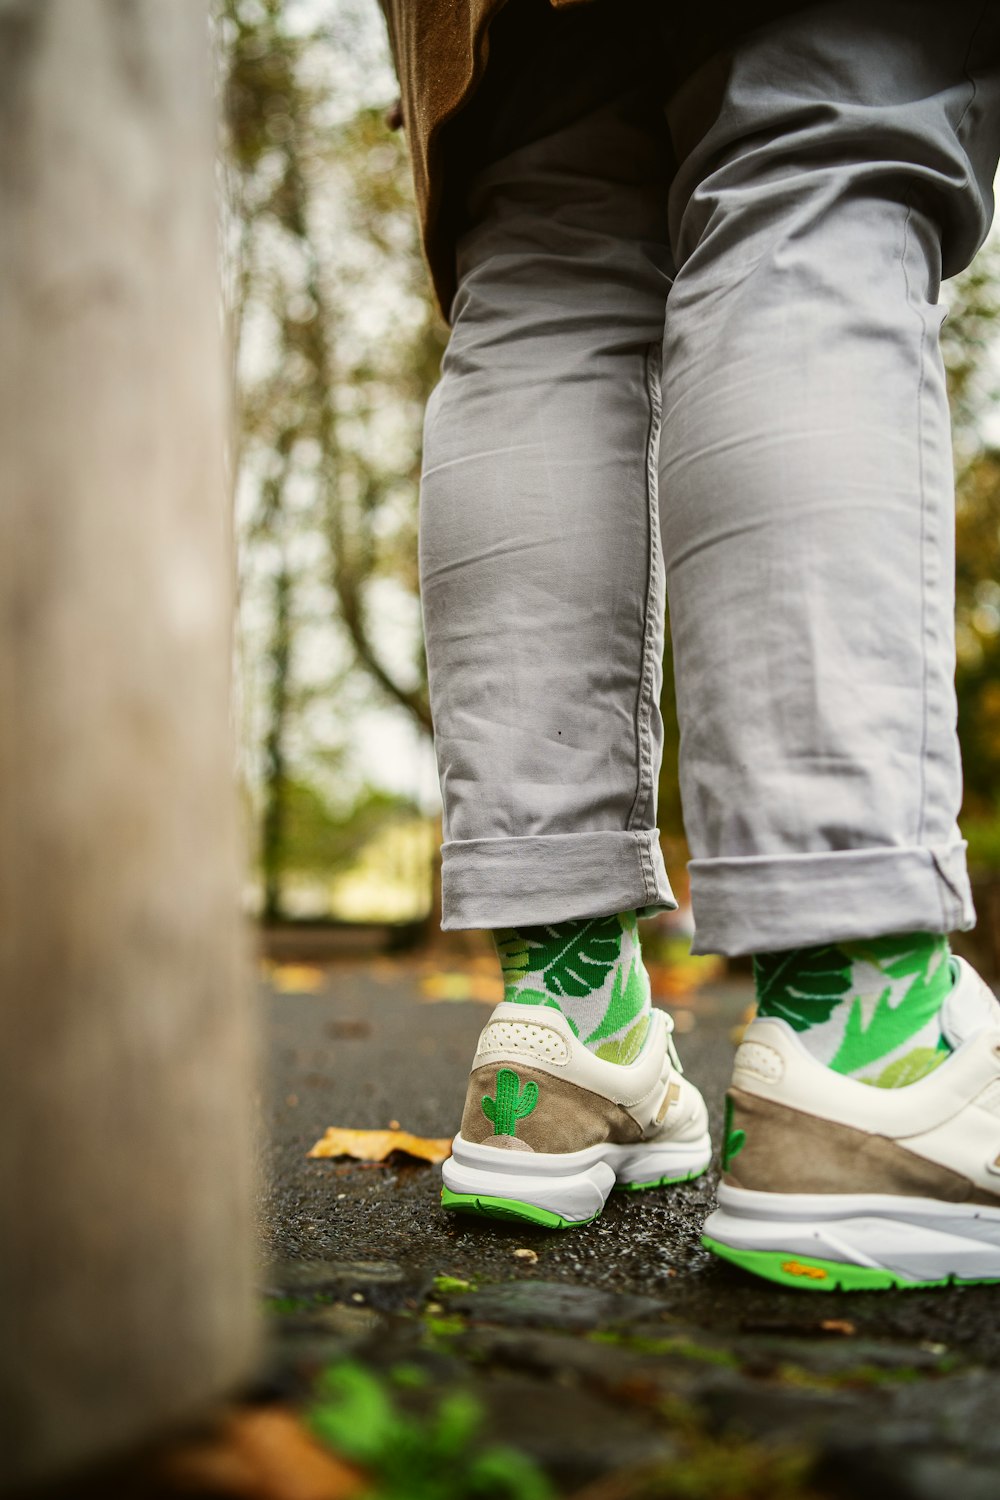 Foto de persona con jeans grises y zapatillas nike verdes y blancas –  Imagen gratuita en Unsplash